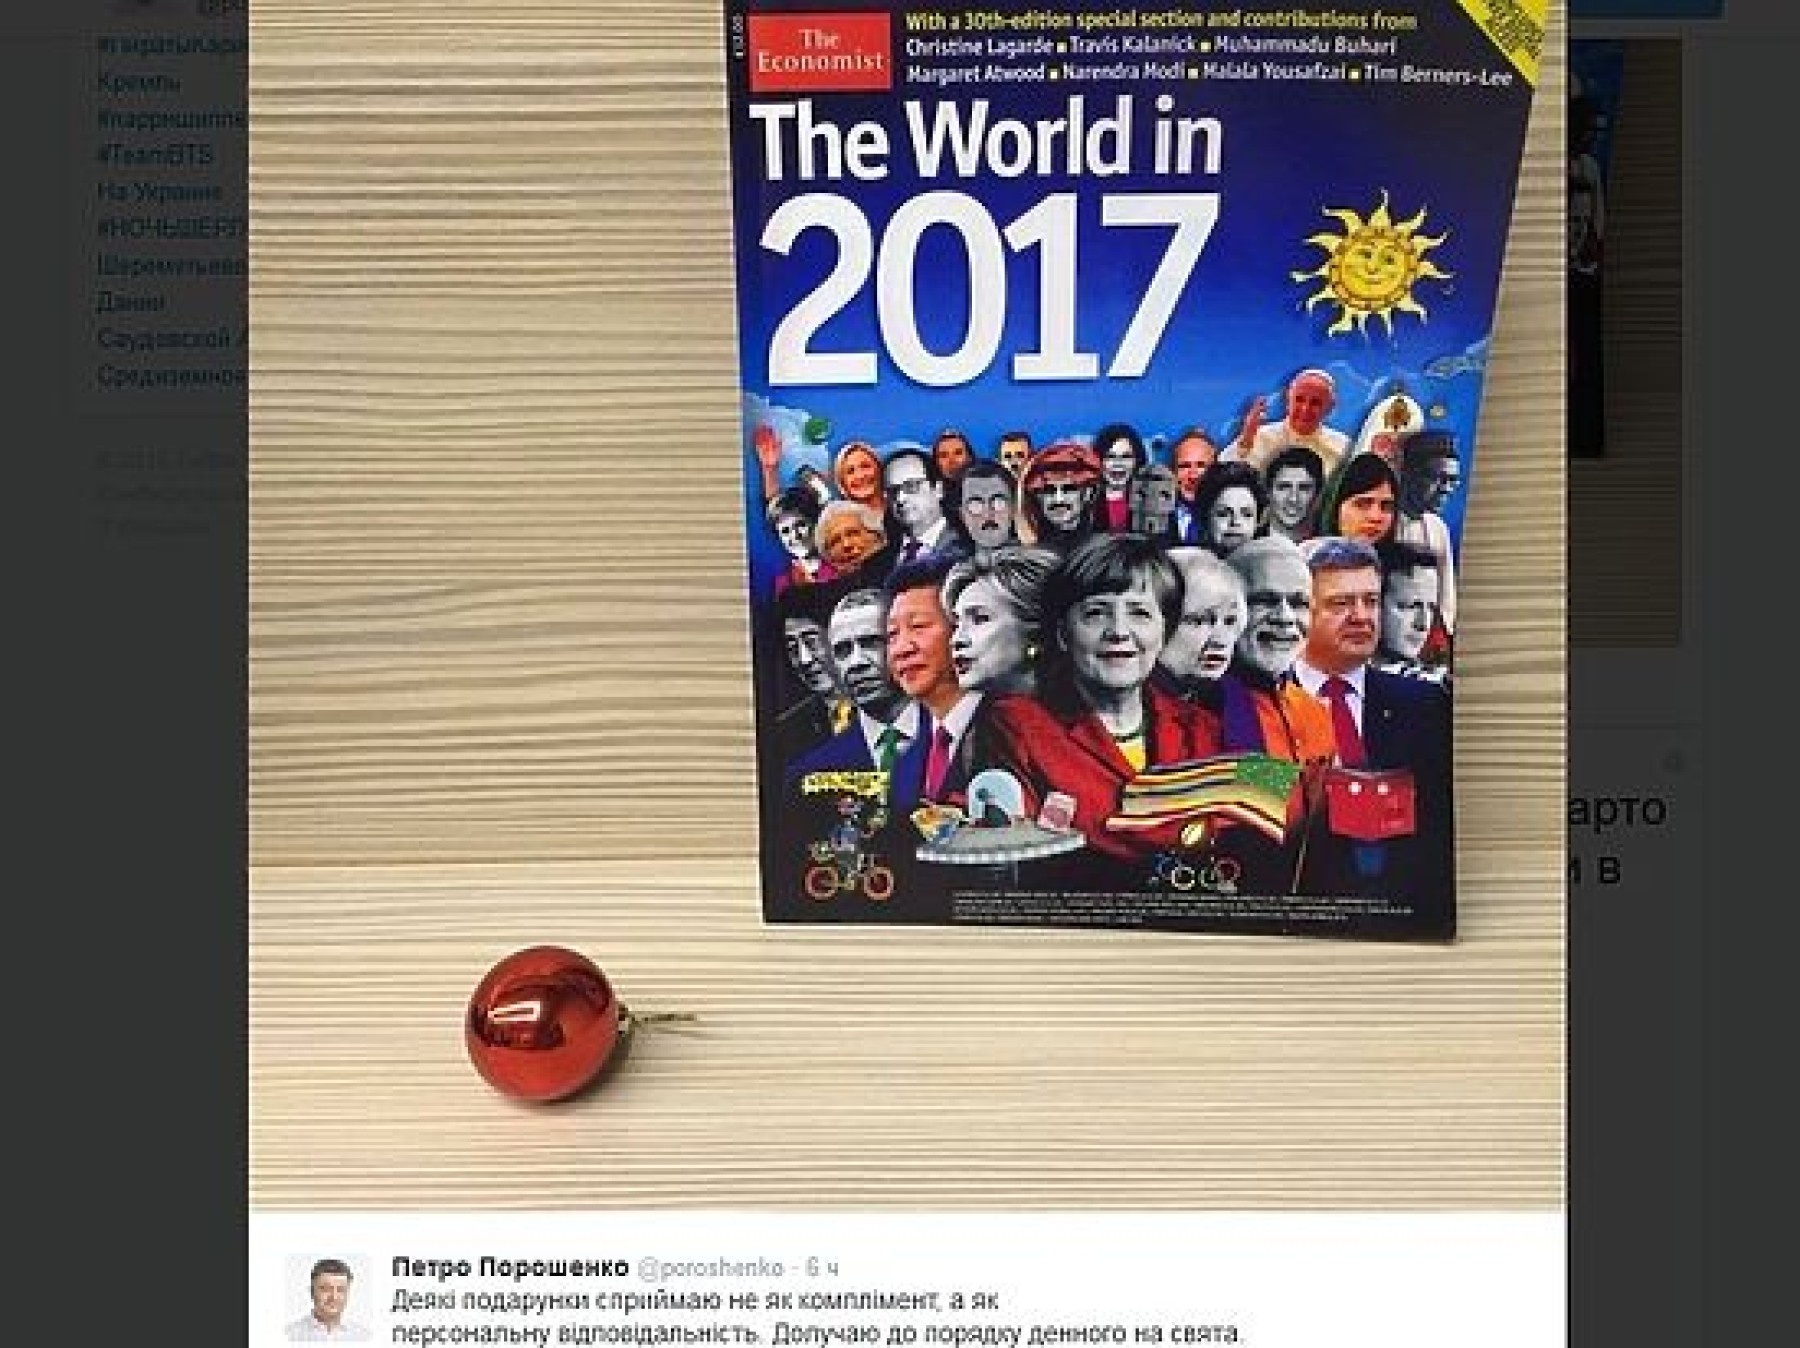 Петр Порошенко подредактировал обложку британского журнала